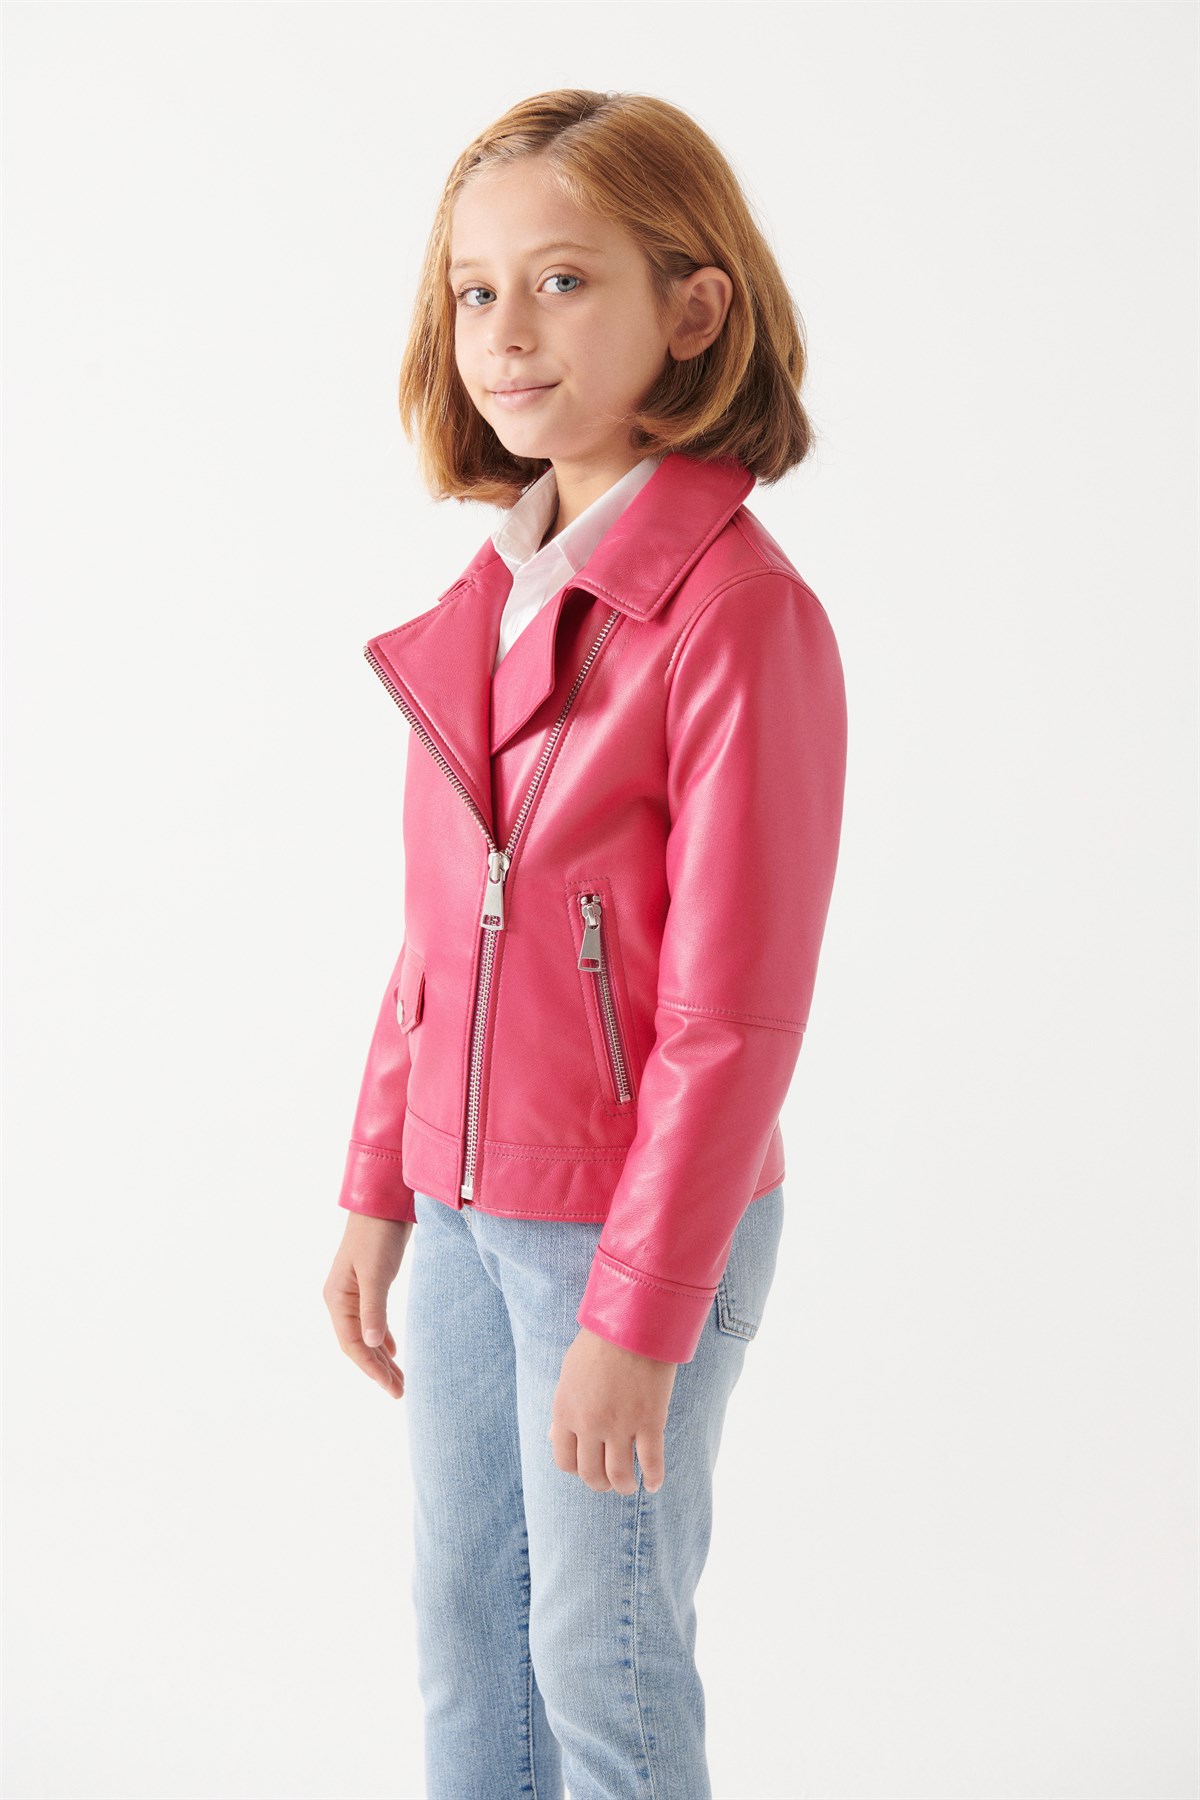 LARA Girls Vanilla Leather Jacket | Girls Leather and Shearling Jacket &  Coat